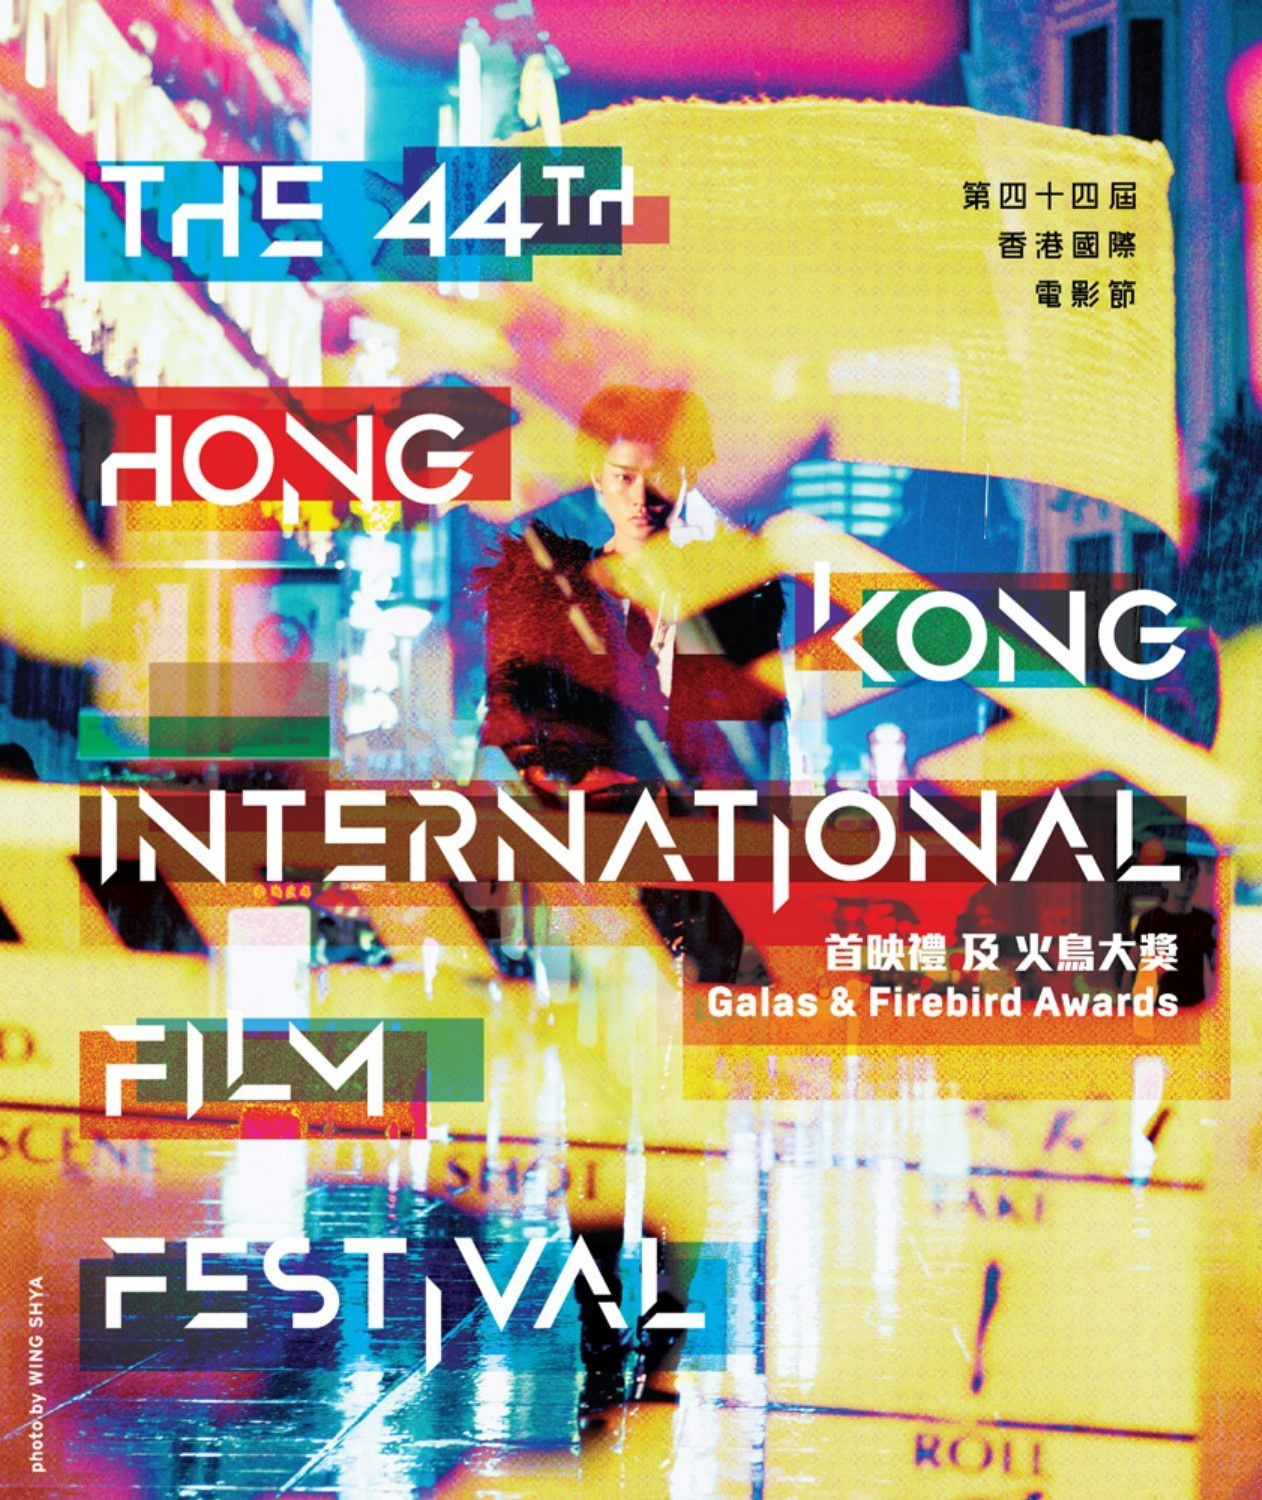 香港国际片子节将继续评比“火鸟年夜奖”四项竞赛